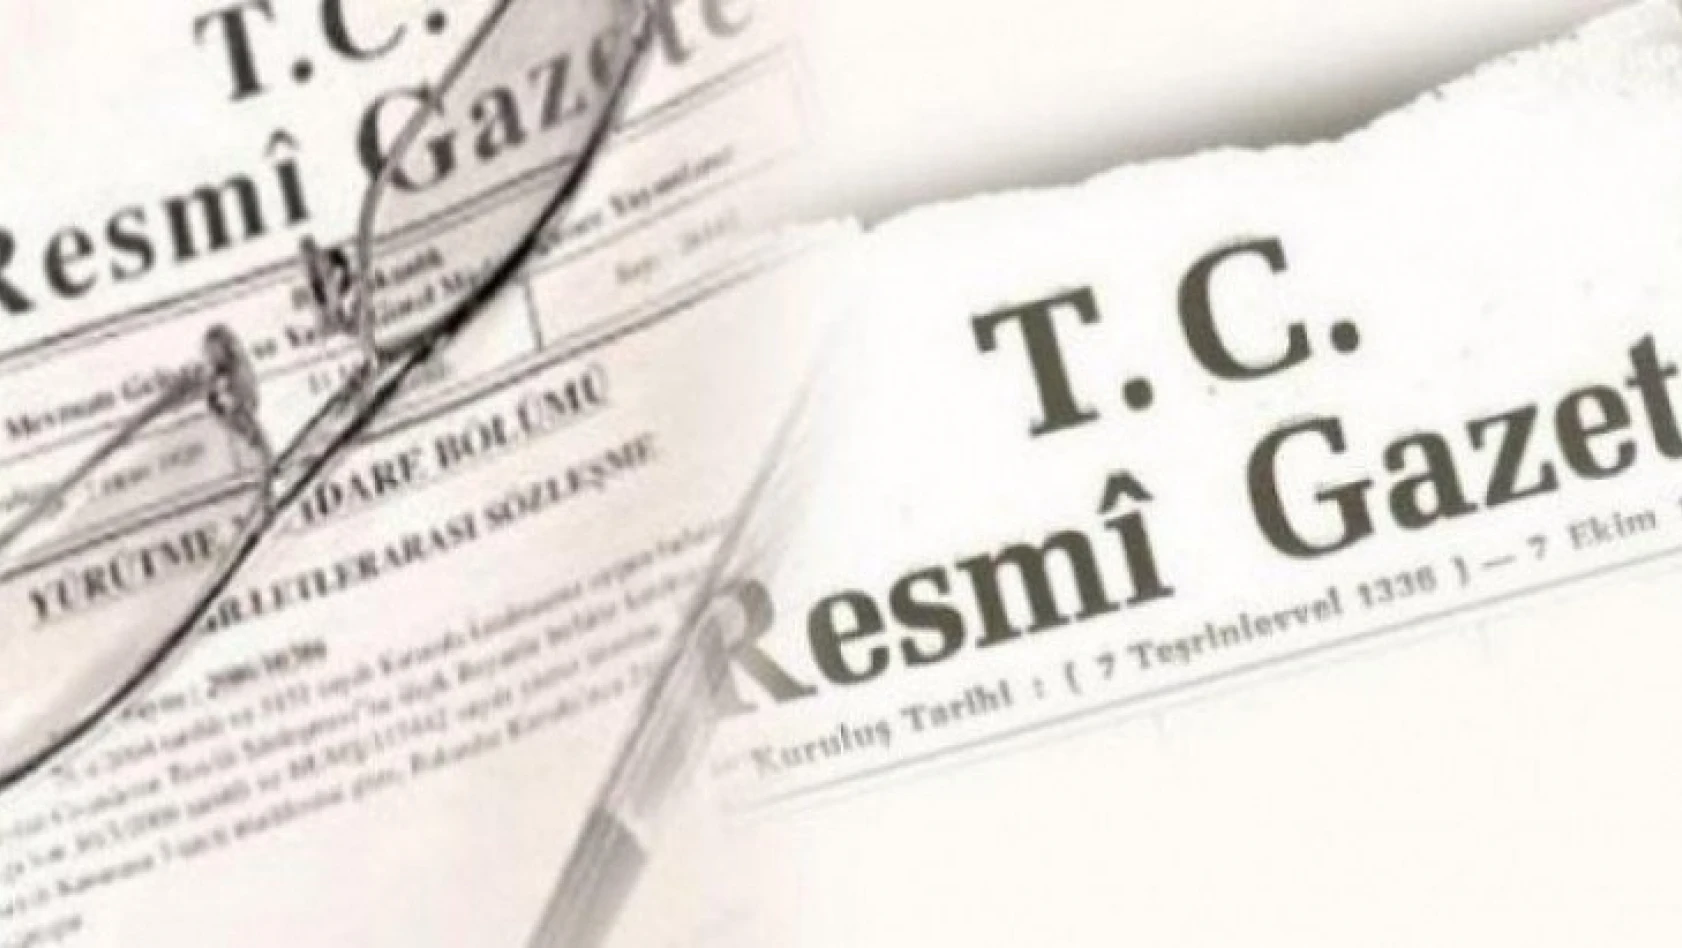 26 ülkeye büyükelçi Atama Kararı Resmi Gazete'de